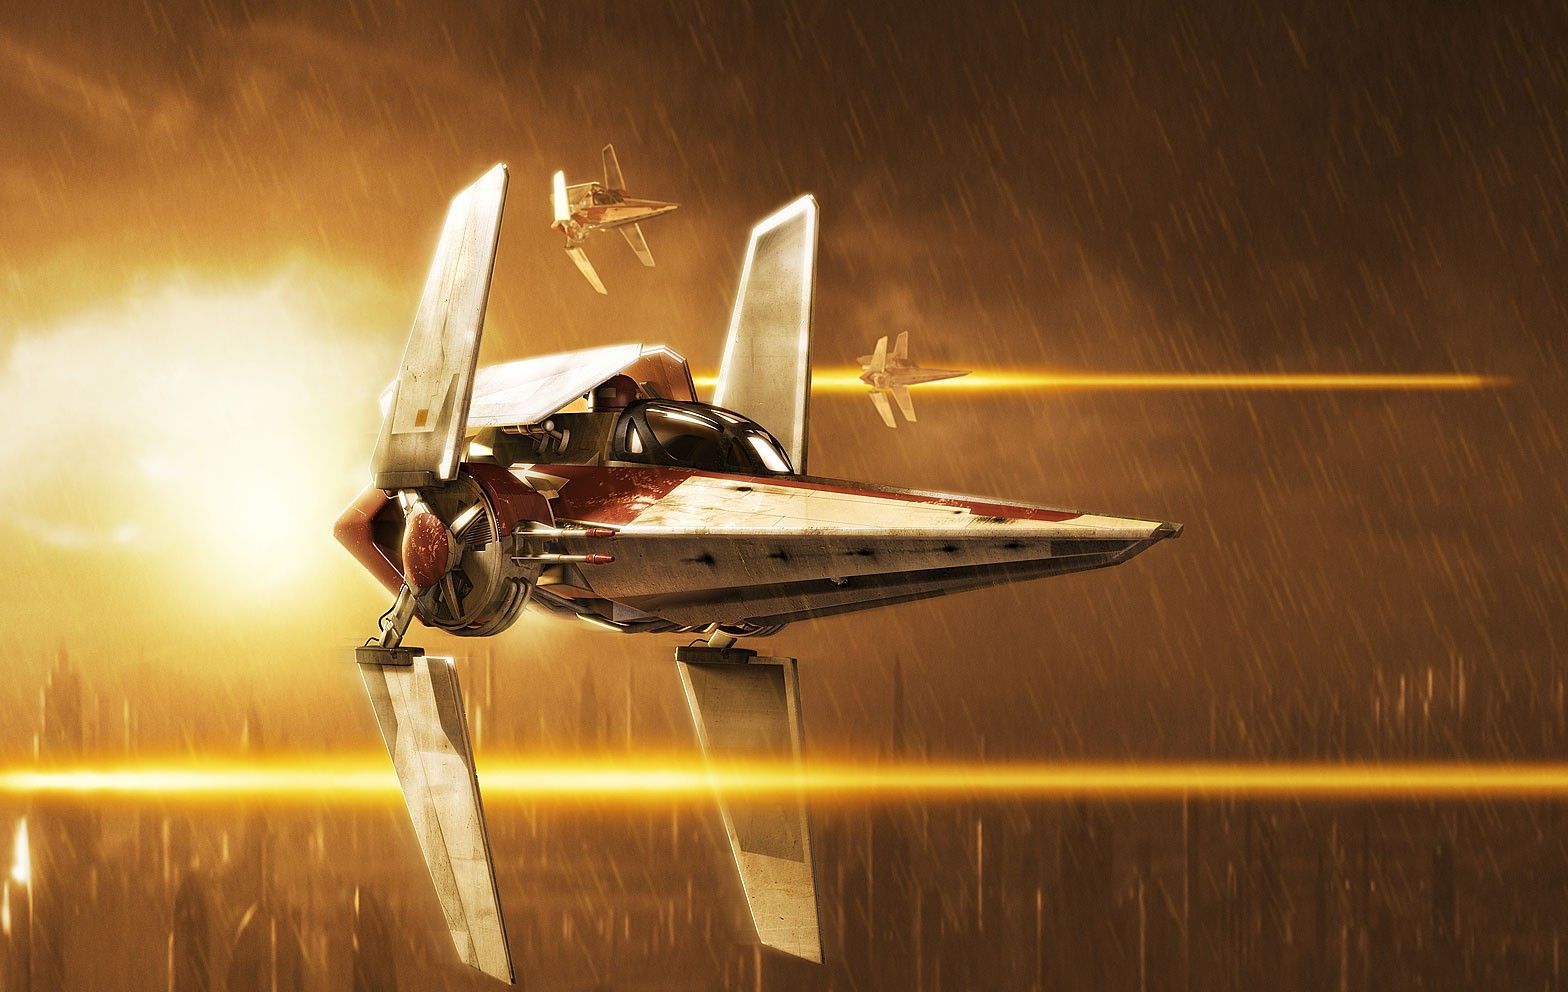 Clone Flight Squad Seven. Star wars ships, Star wars vehicles, Star wars galaxies